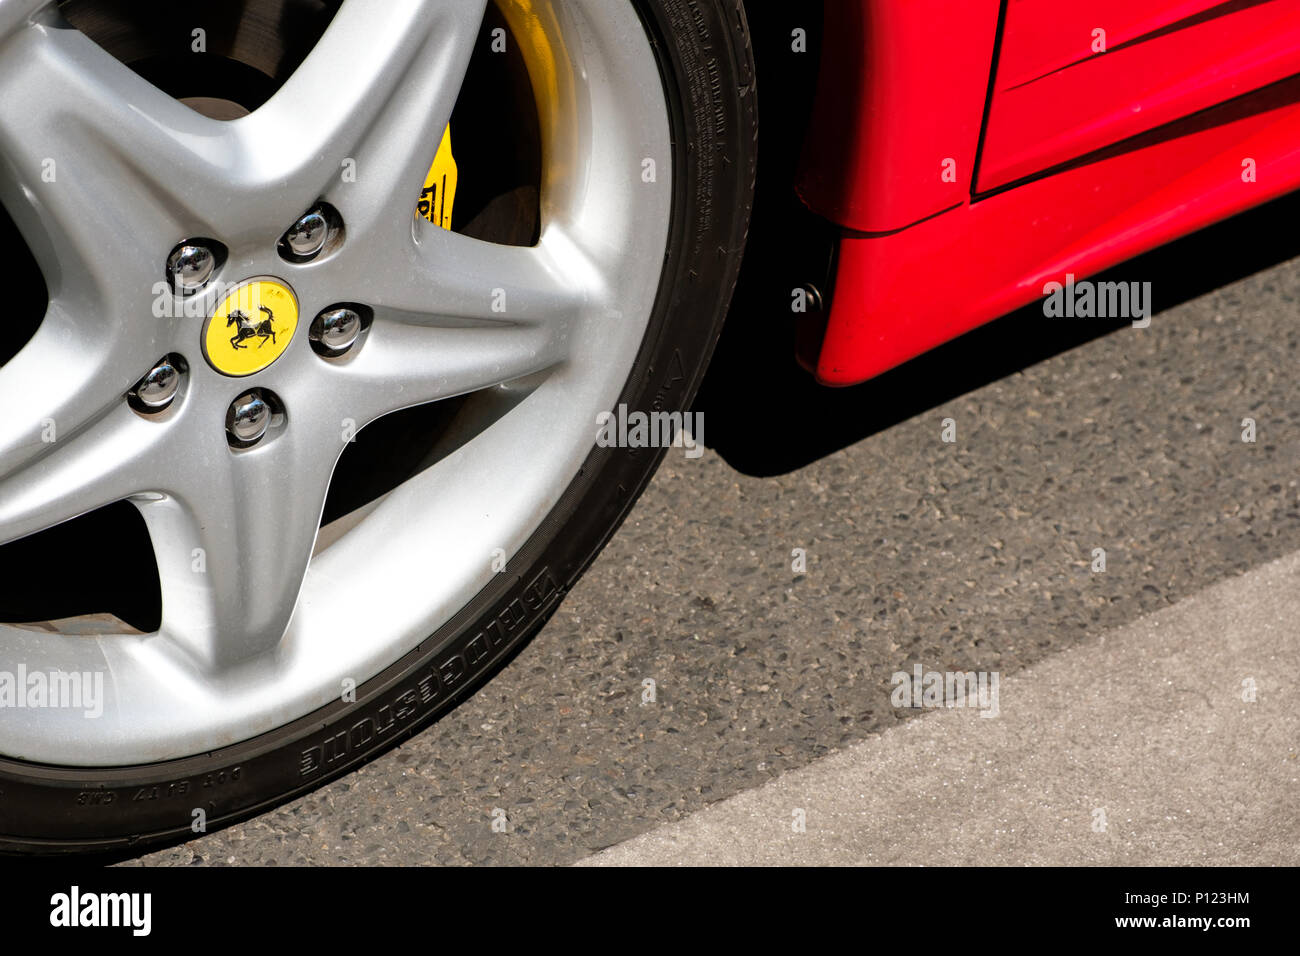 Berlin, Deutschland - Juni 09, 2018: Nahaufnahme von einem Autoreifen mit Ferrari Logo Design/Marke bei Oldtimer Automobile und Oldtimer Veranstaltung in Berlin, G Stockfoto